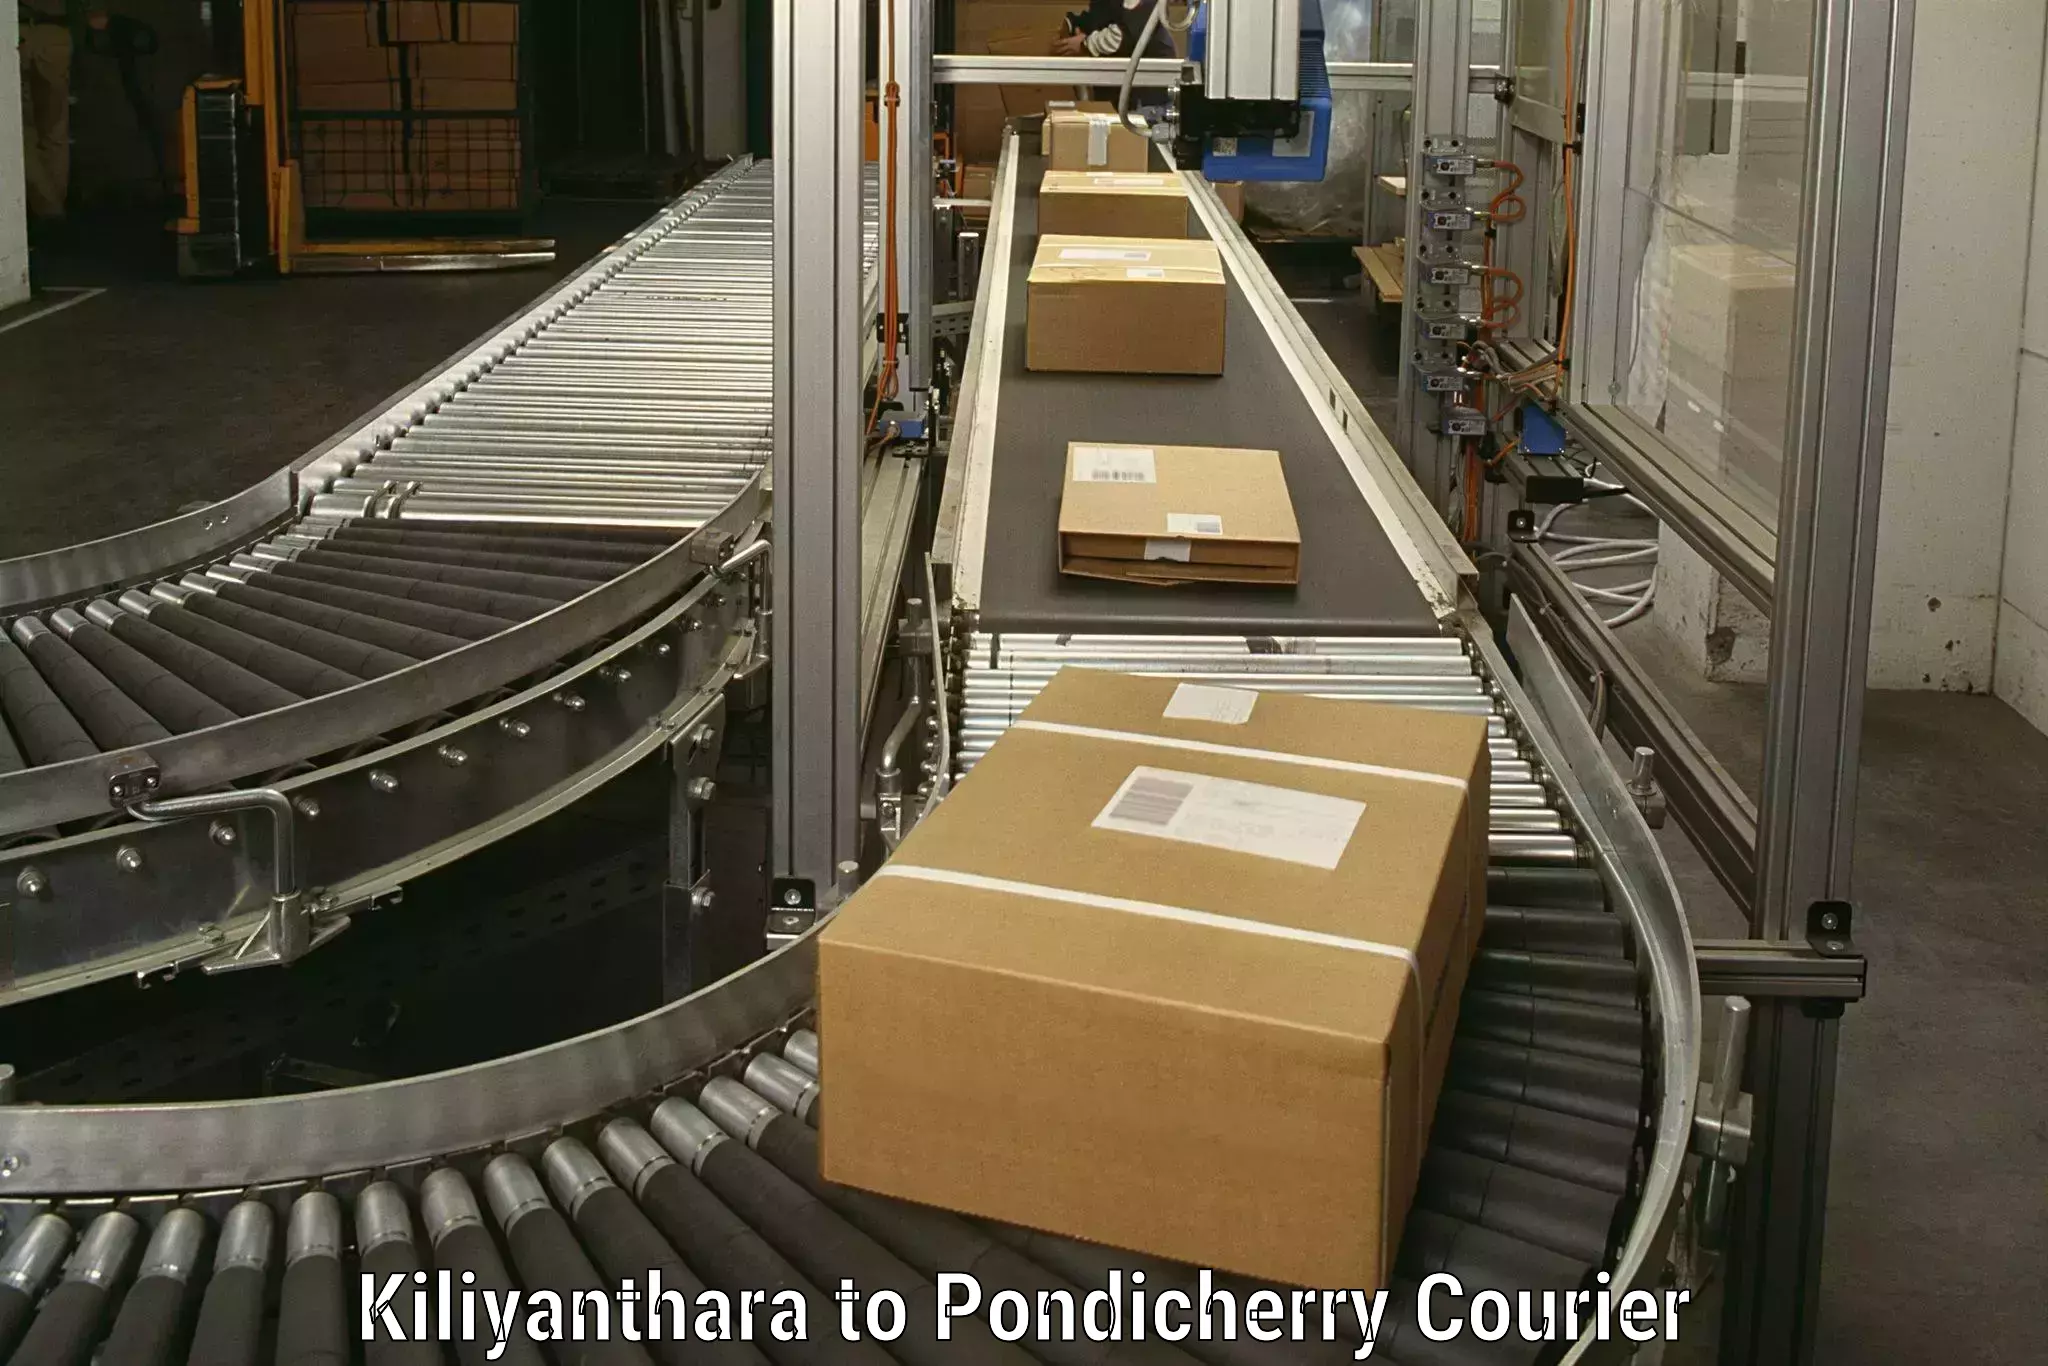 Budget-friendly moving services Kiliyanthara to Pondicherry